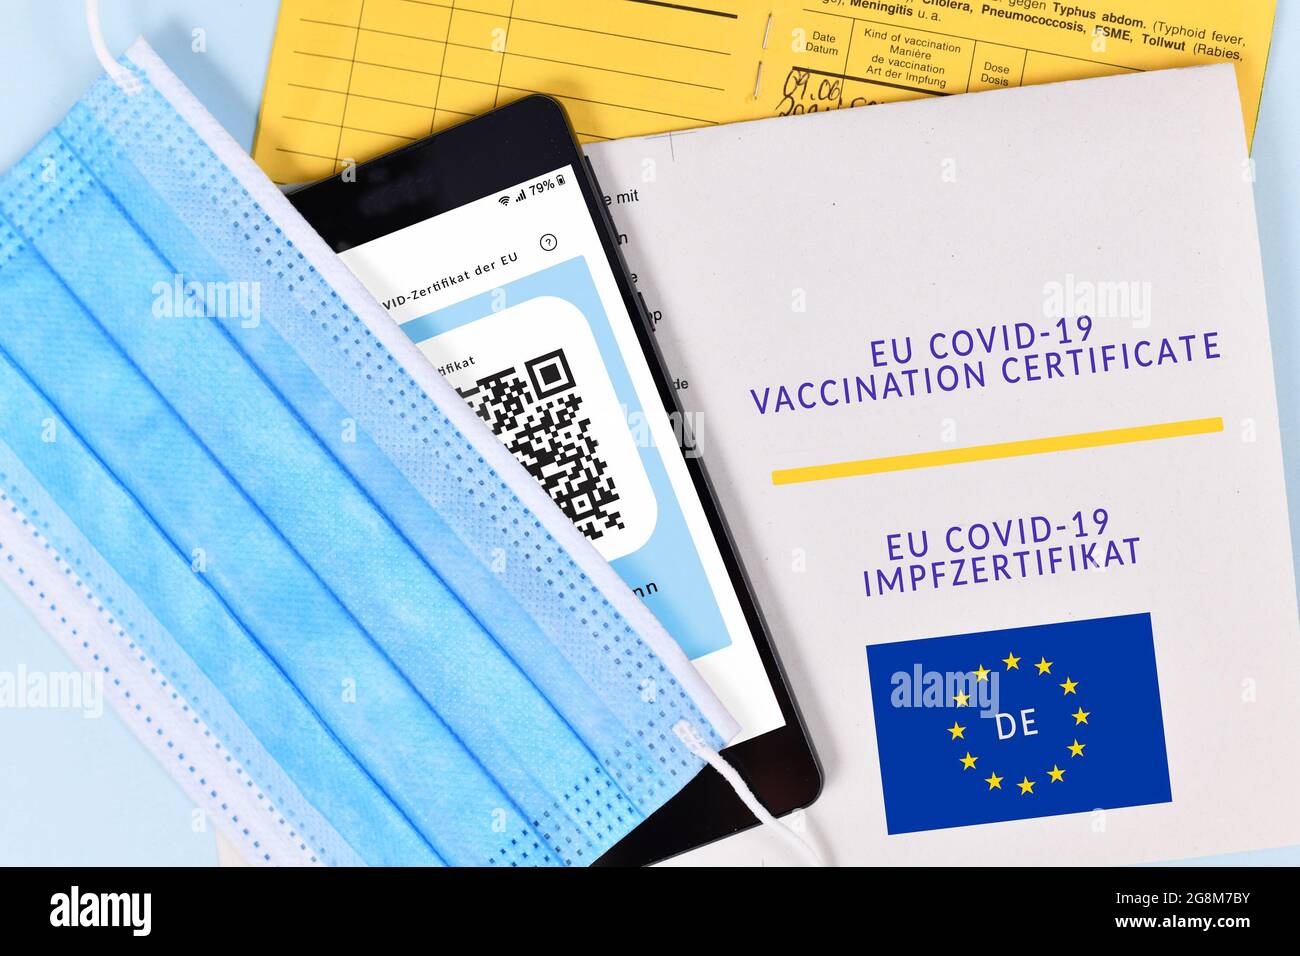 Certificado de vacunación EU COVID-19 en papel y digital en teléfono móvil, pasaporte de vacuna y máscara facial Foto de stock